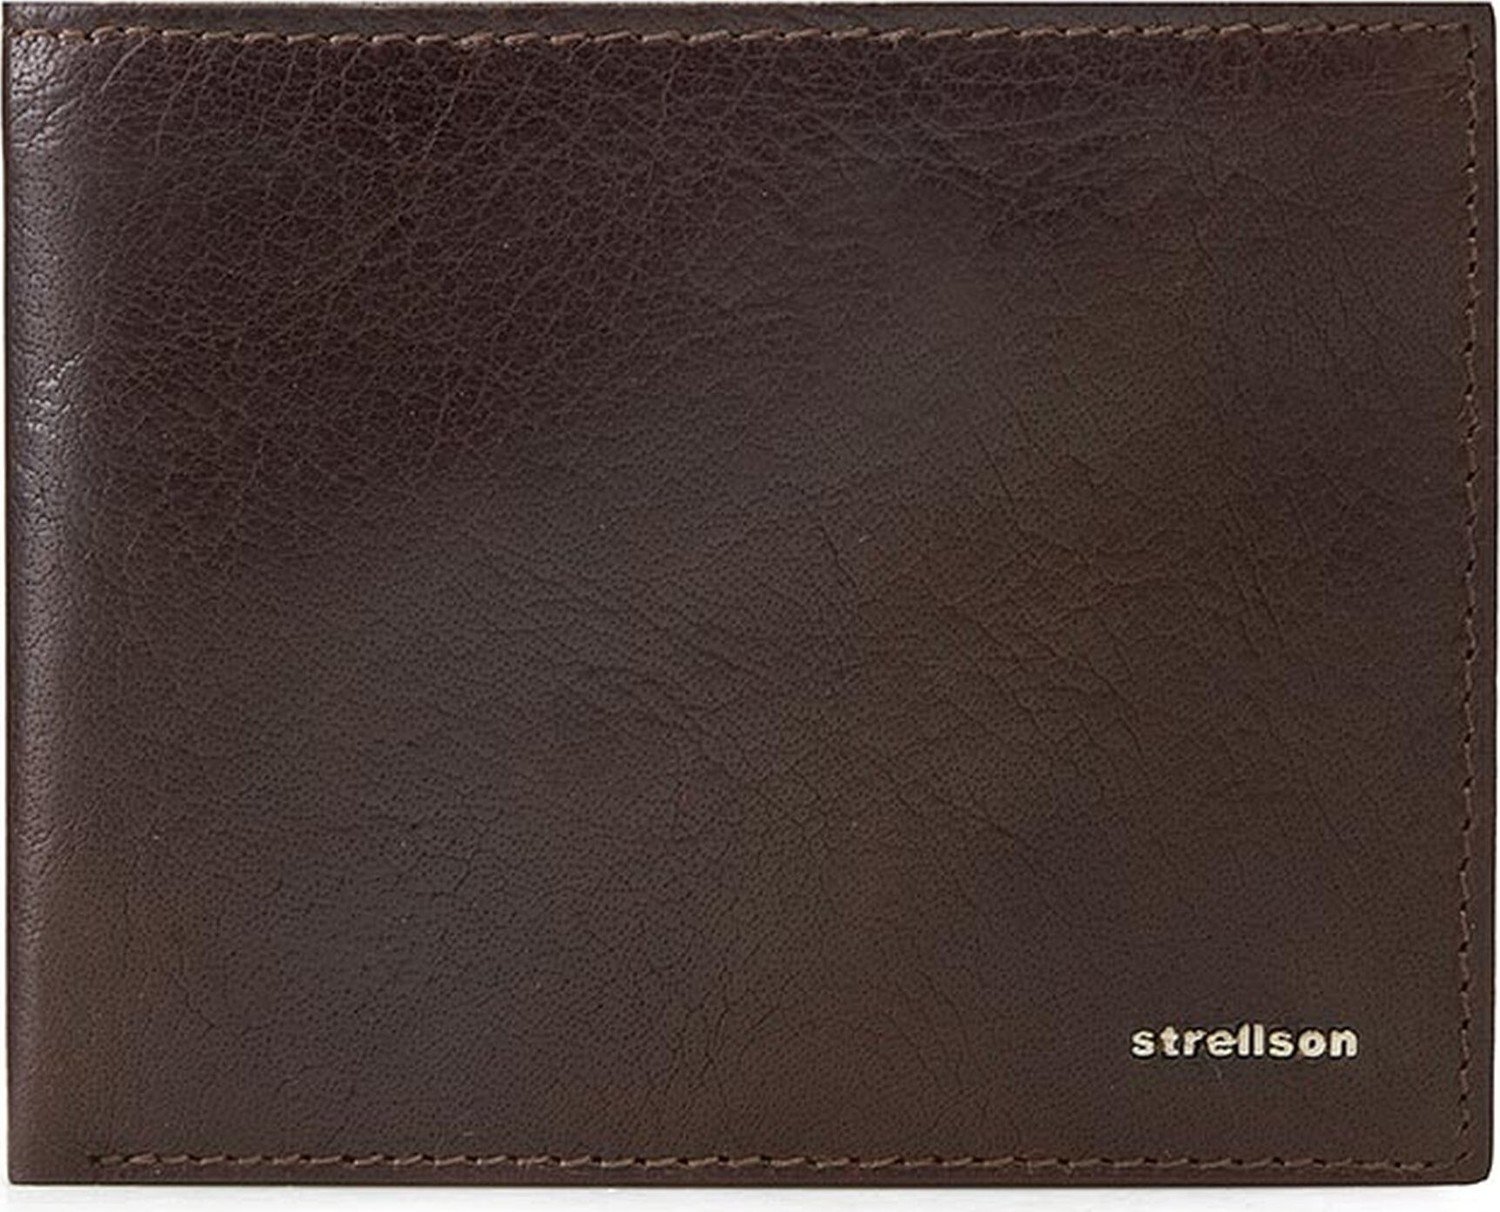 Velká pánská peněženka Strellson Billfold H8 4010001301 D.Brown 702